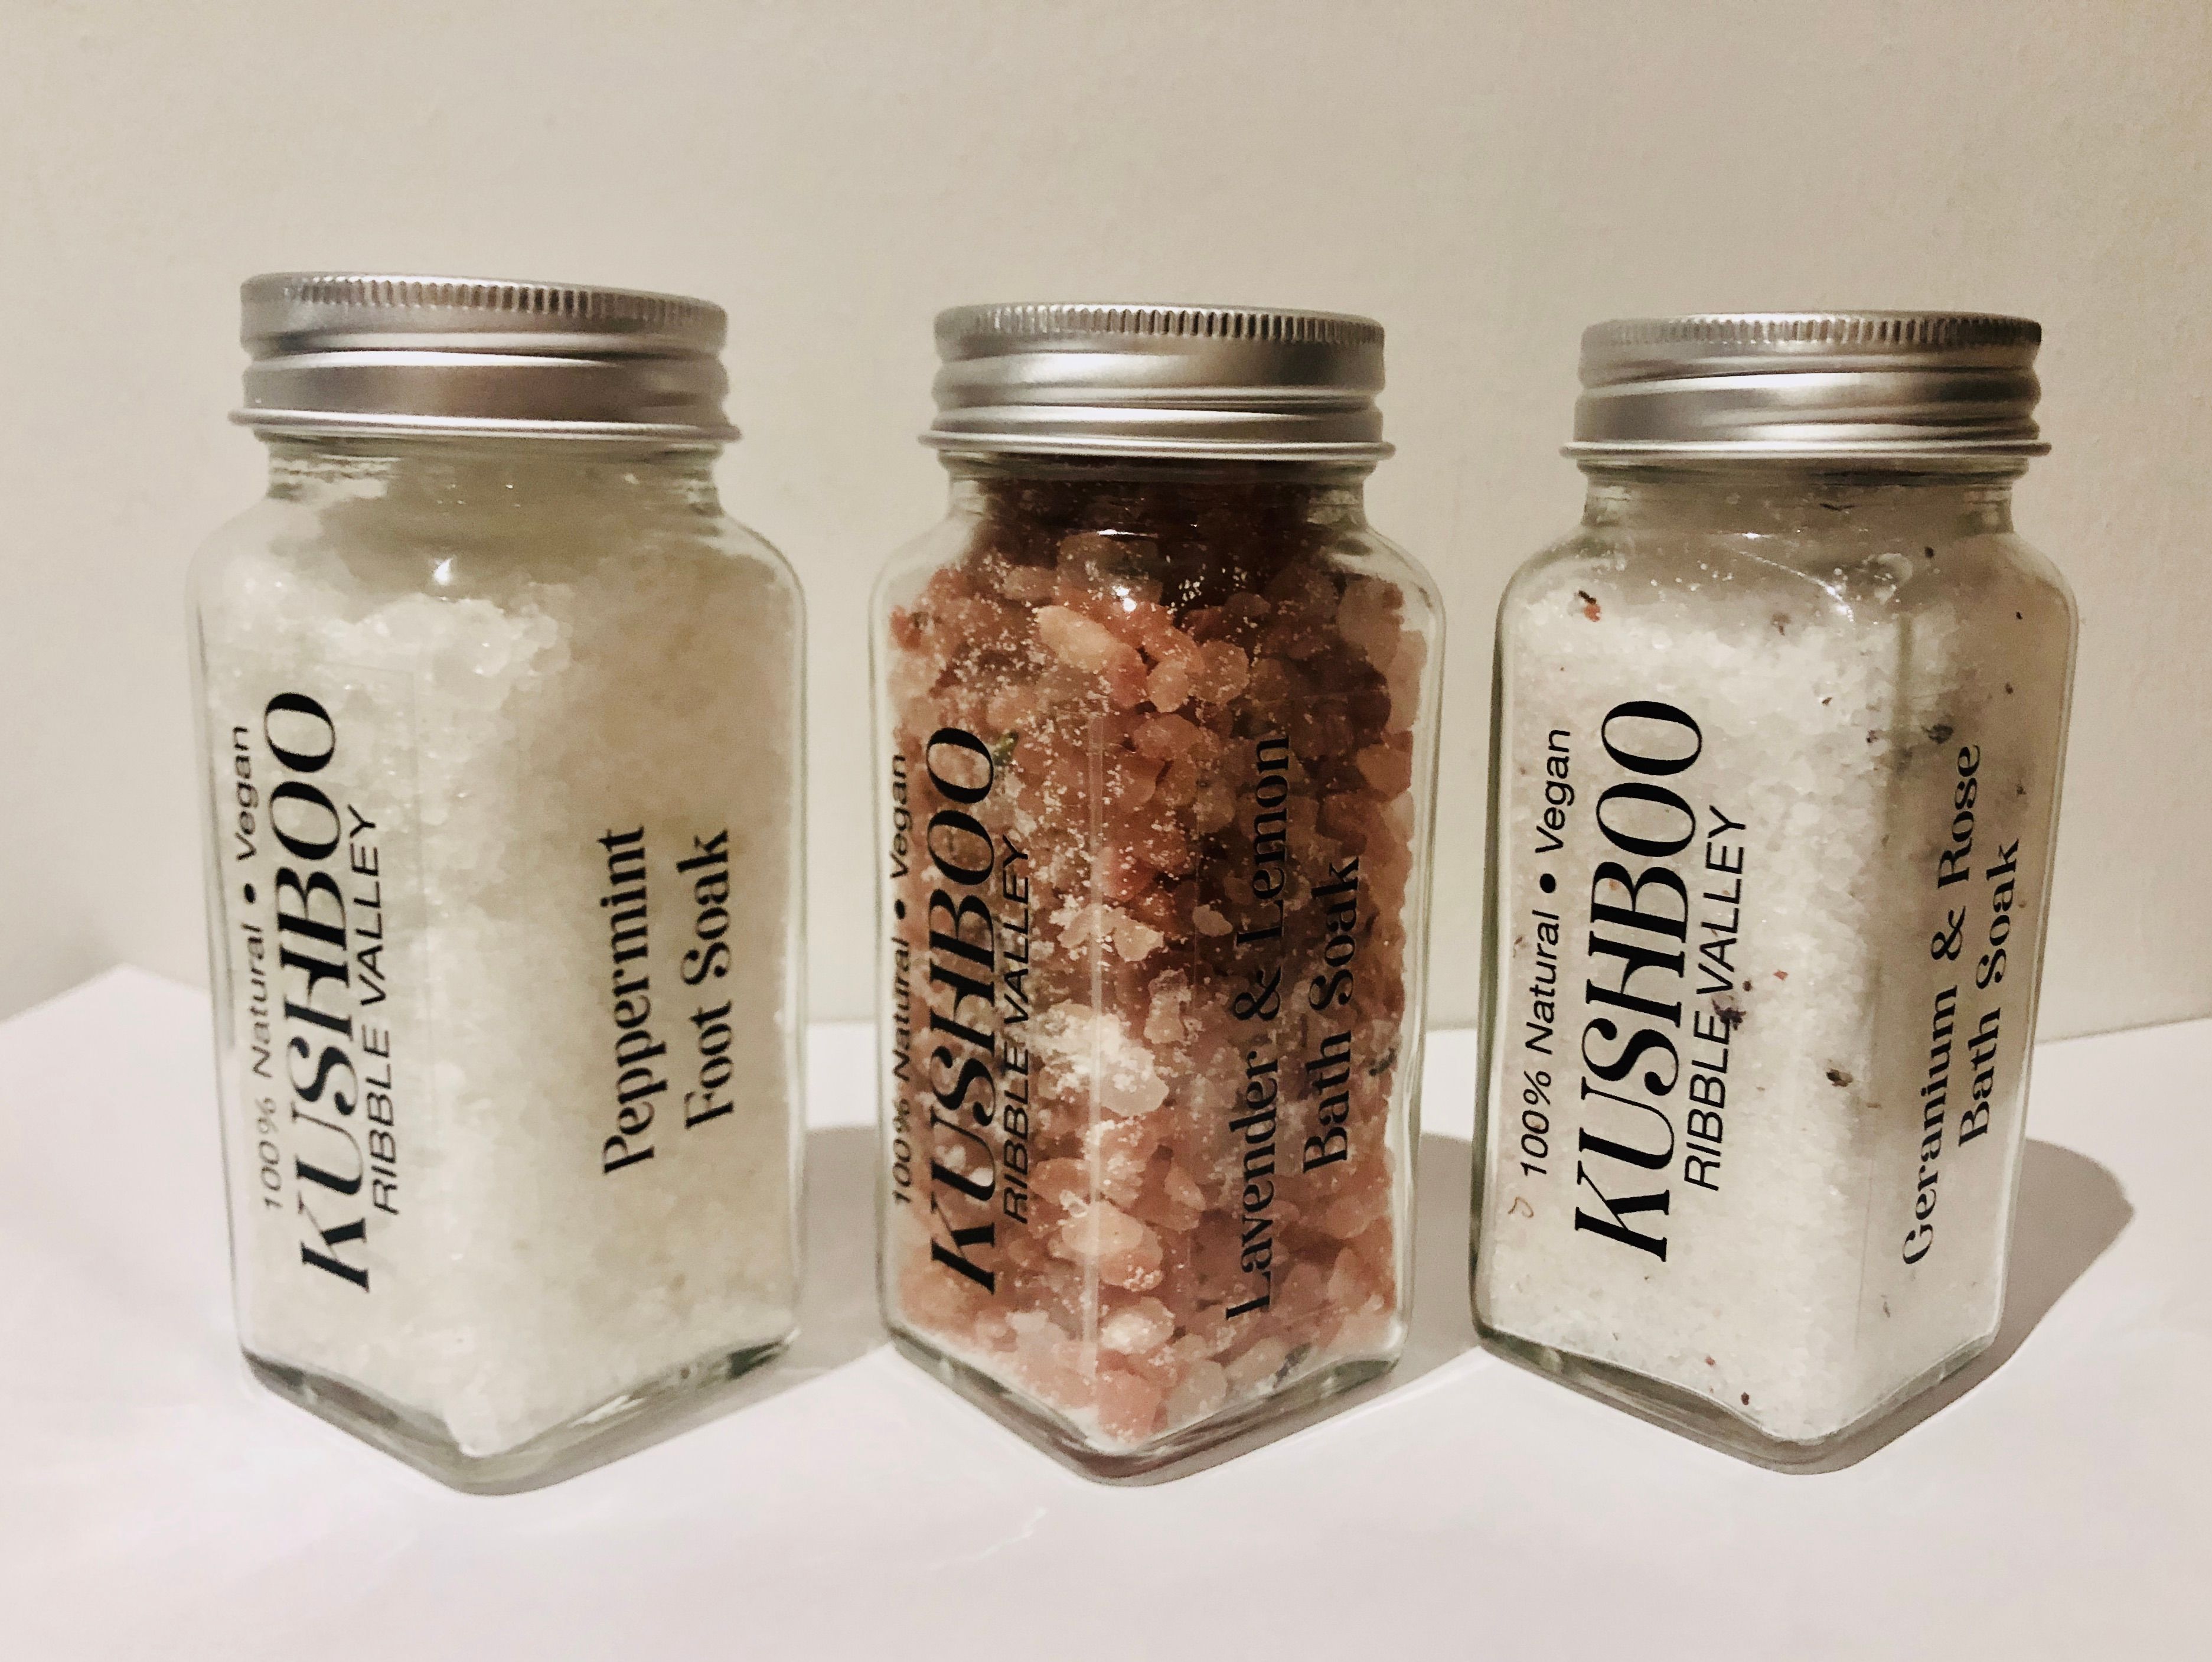 Free sample bottles of Salts